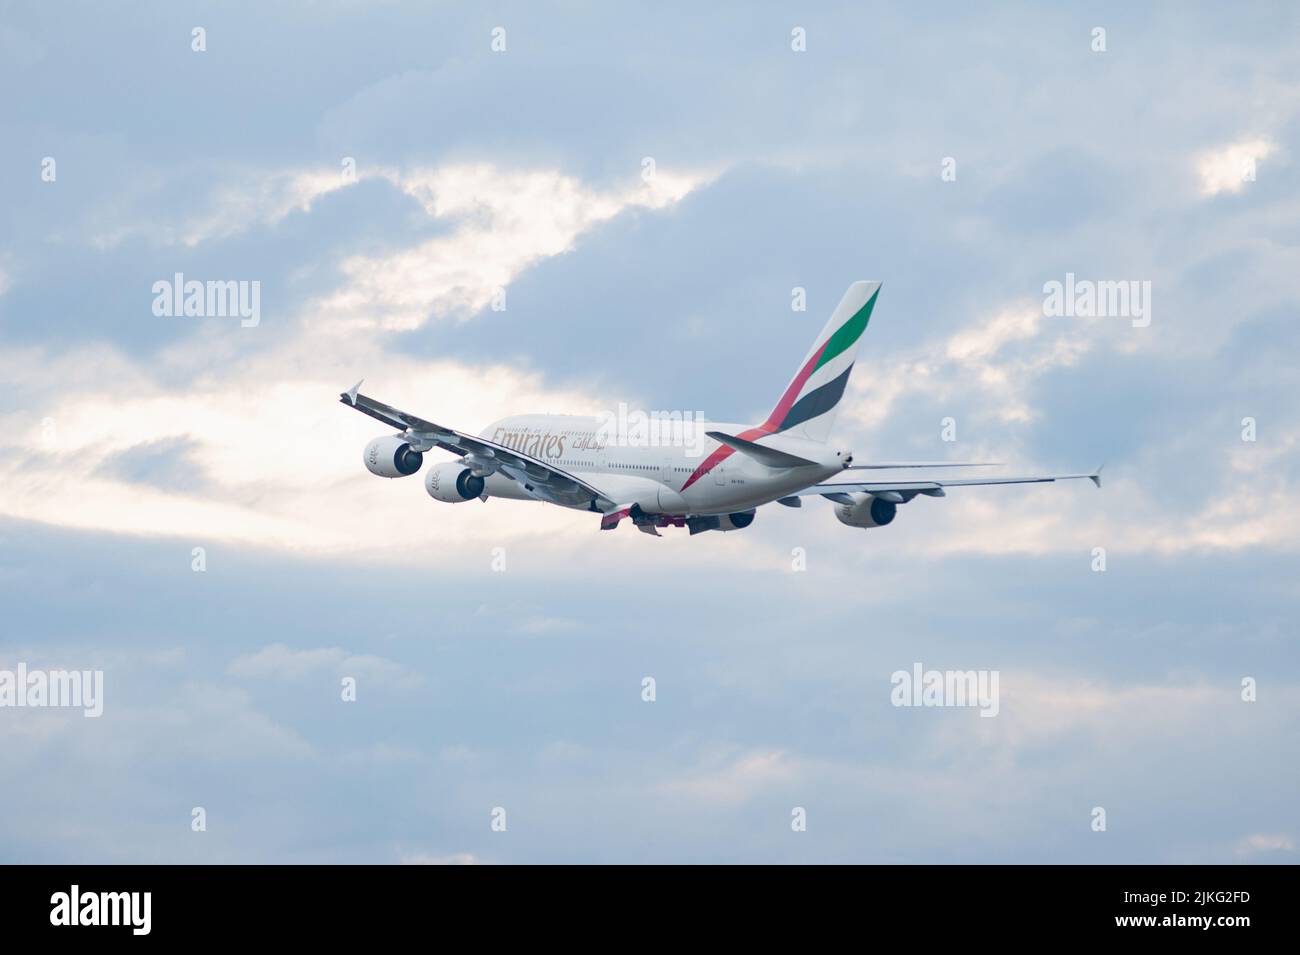 25.06.2022, Germania, Berlino, Berlino - Europa - un aereo Emirates Airline Airbus A380-800 passeggeri con registrazione A6-EVS decollo da Berlino Foto Stock